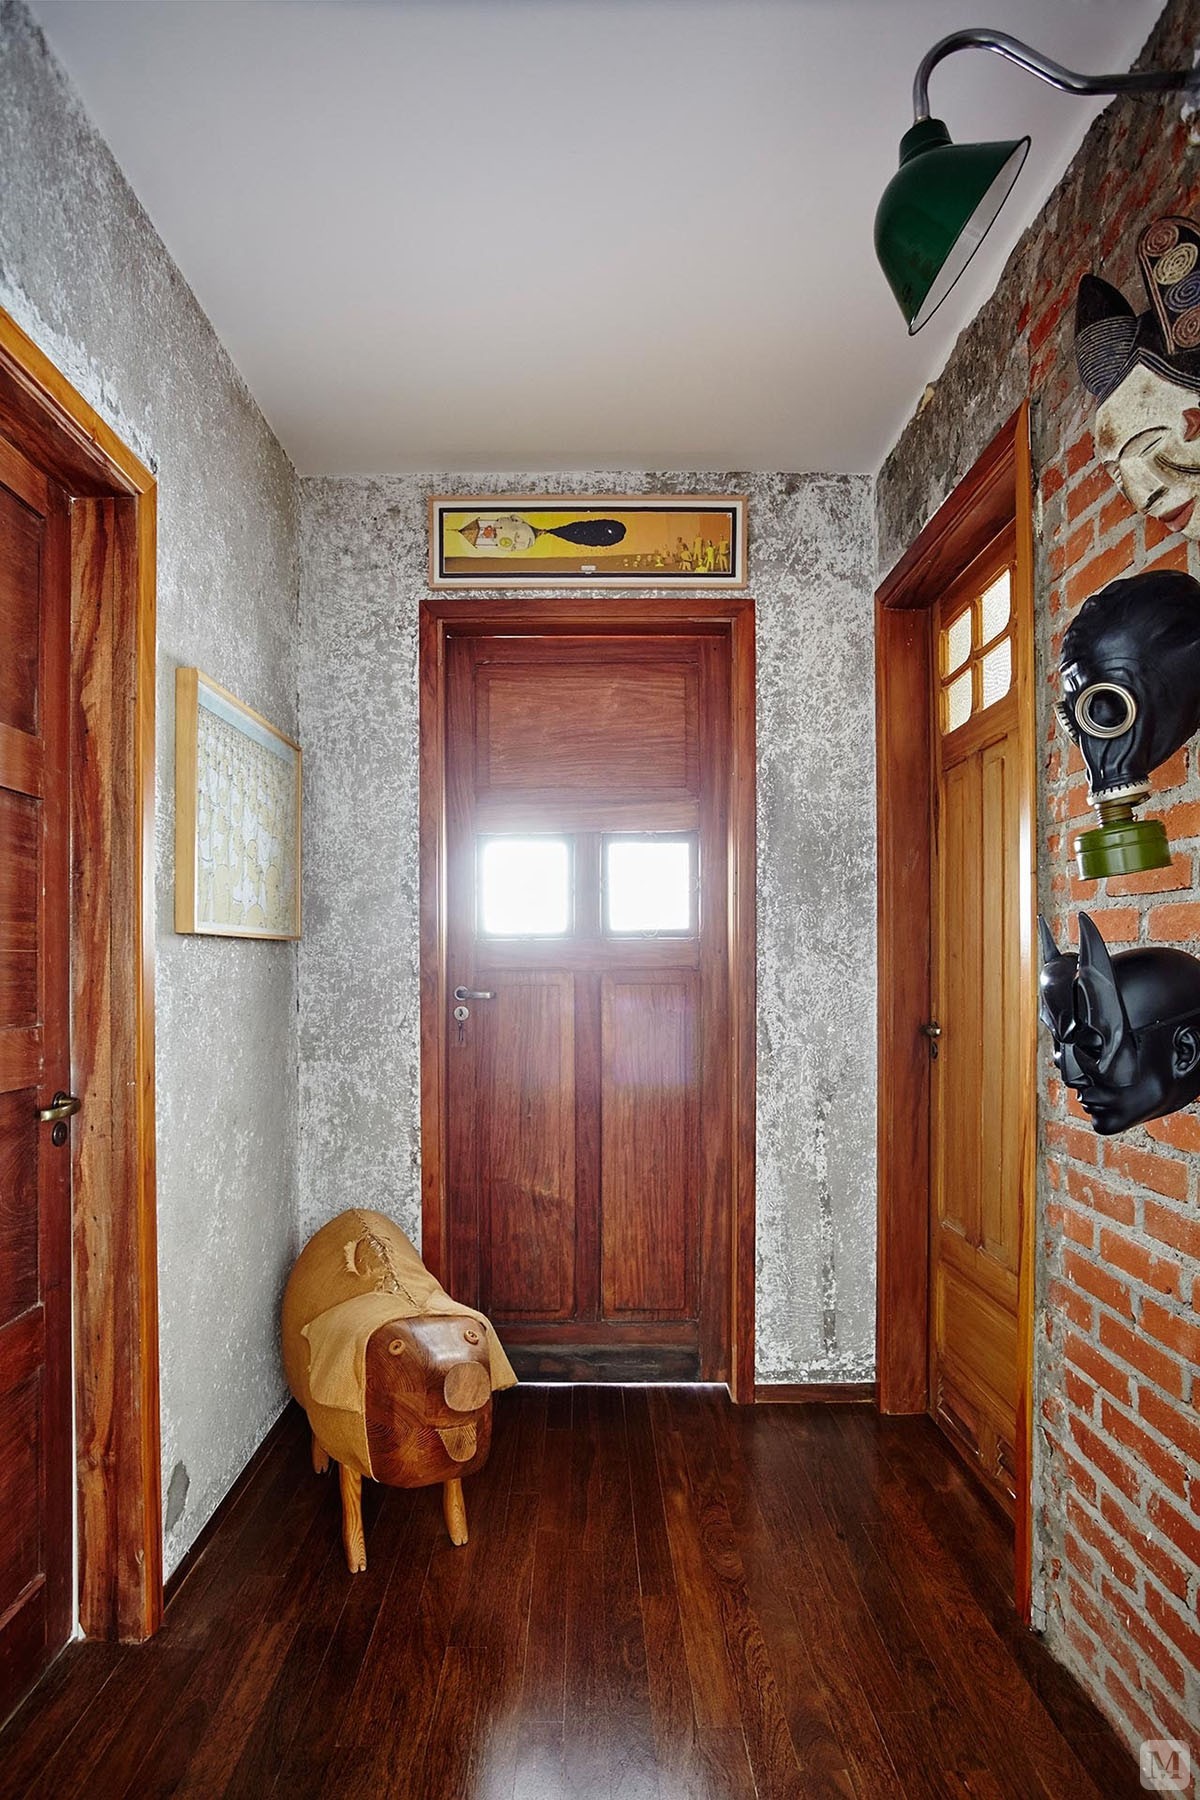 深色的木质地板和几扇门相互呼应，原始的文化砖可见独特的设计。

入户门厅的设计是独特而具有后现代风格，也可一眼看见客厅的空间。